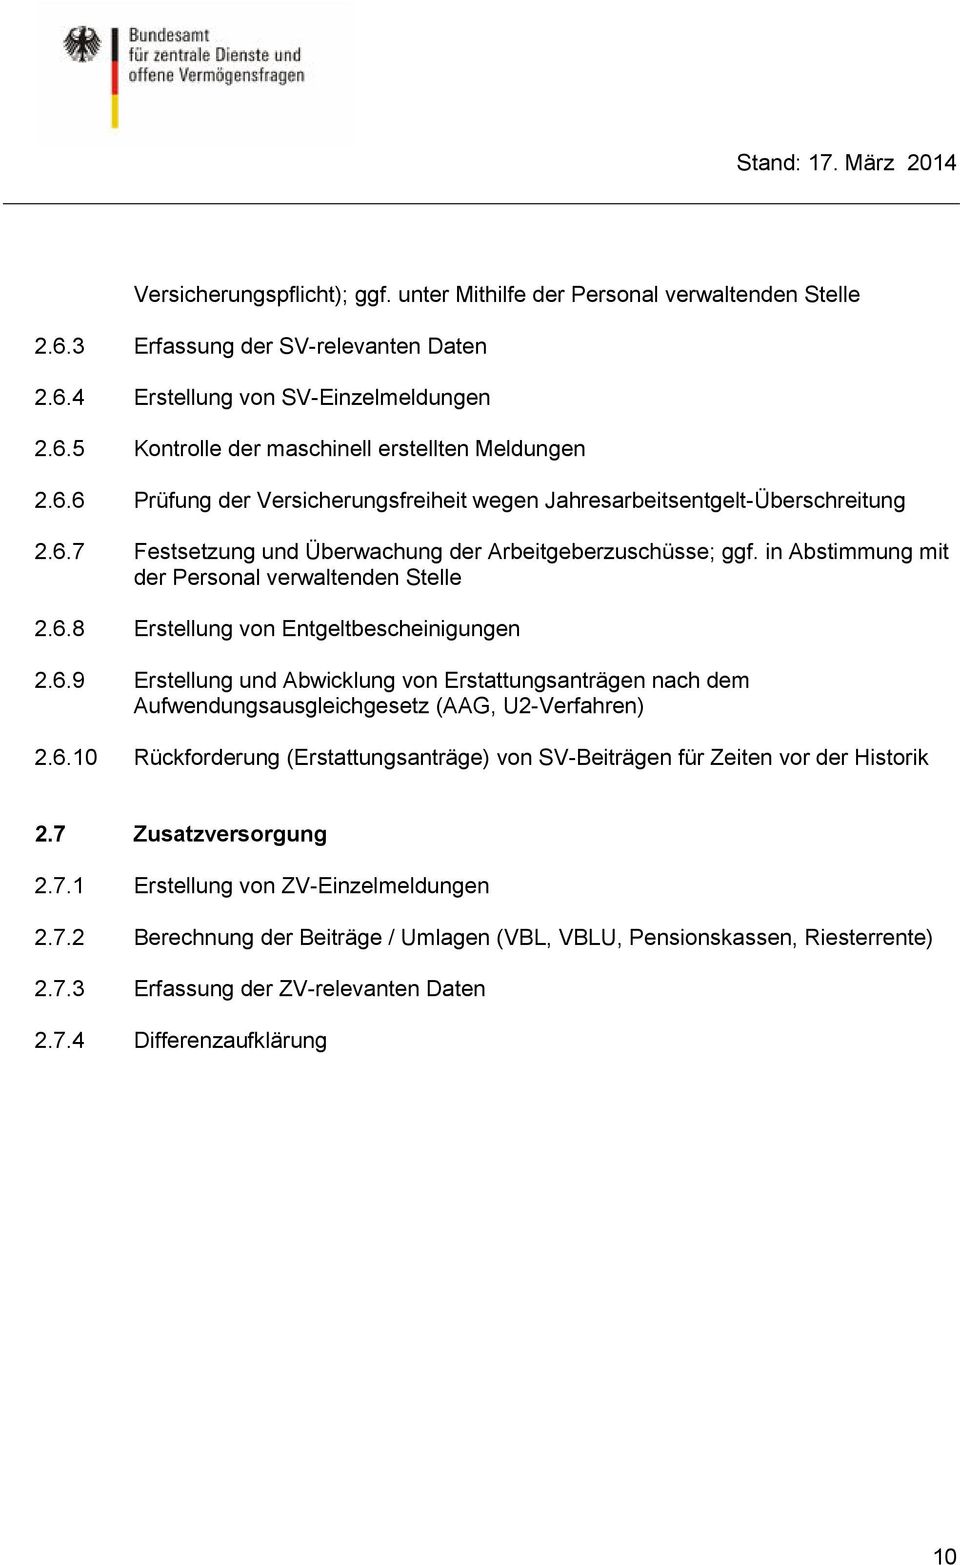 6.9 Erstellung und Abwicklung von Erstattungsanträgen nach dem Aufwendungsausgleichgesetz (AAG, U2-Verfahren) 2.6.10 Rückforderung (Erstattungsanträge) von SV-Beiträgen für Zeiten vor der Historik 2.